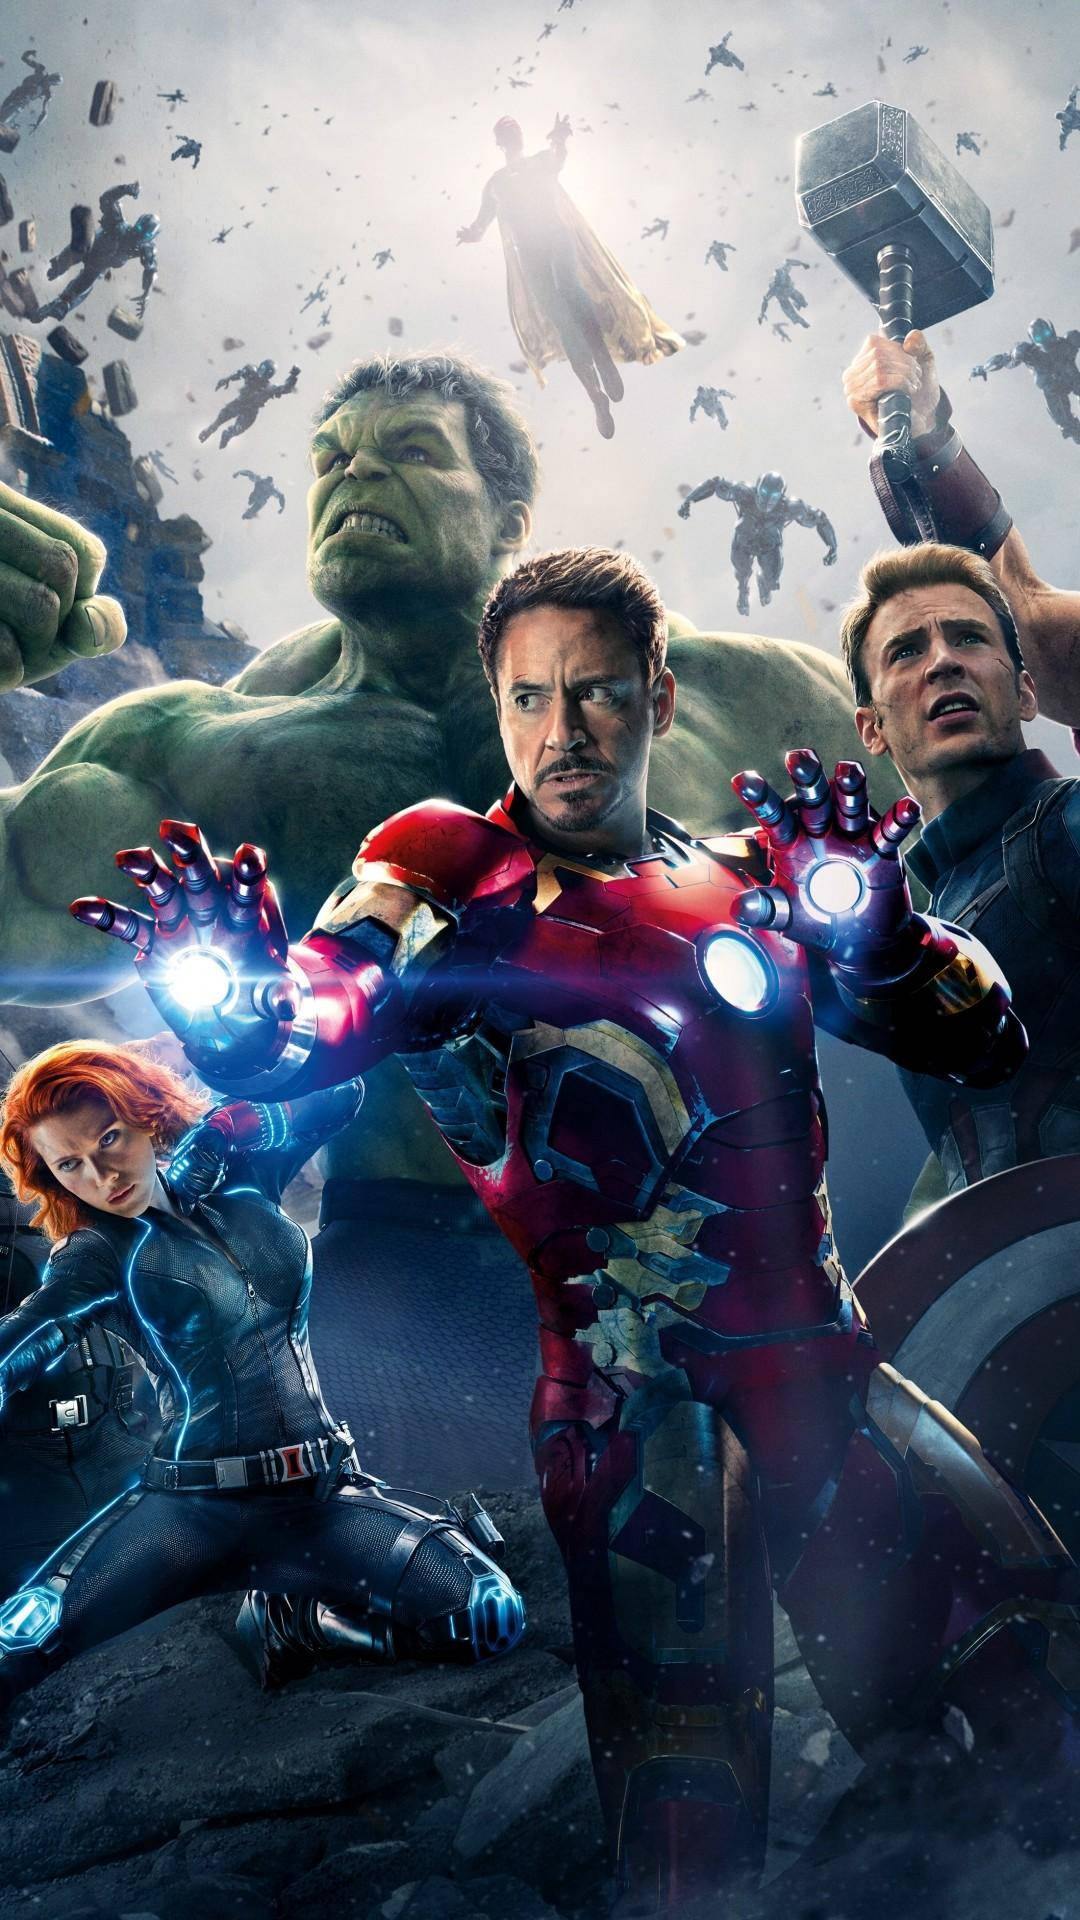 Avengersiphone X Iron Man - width=